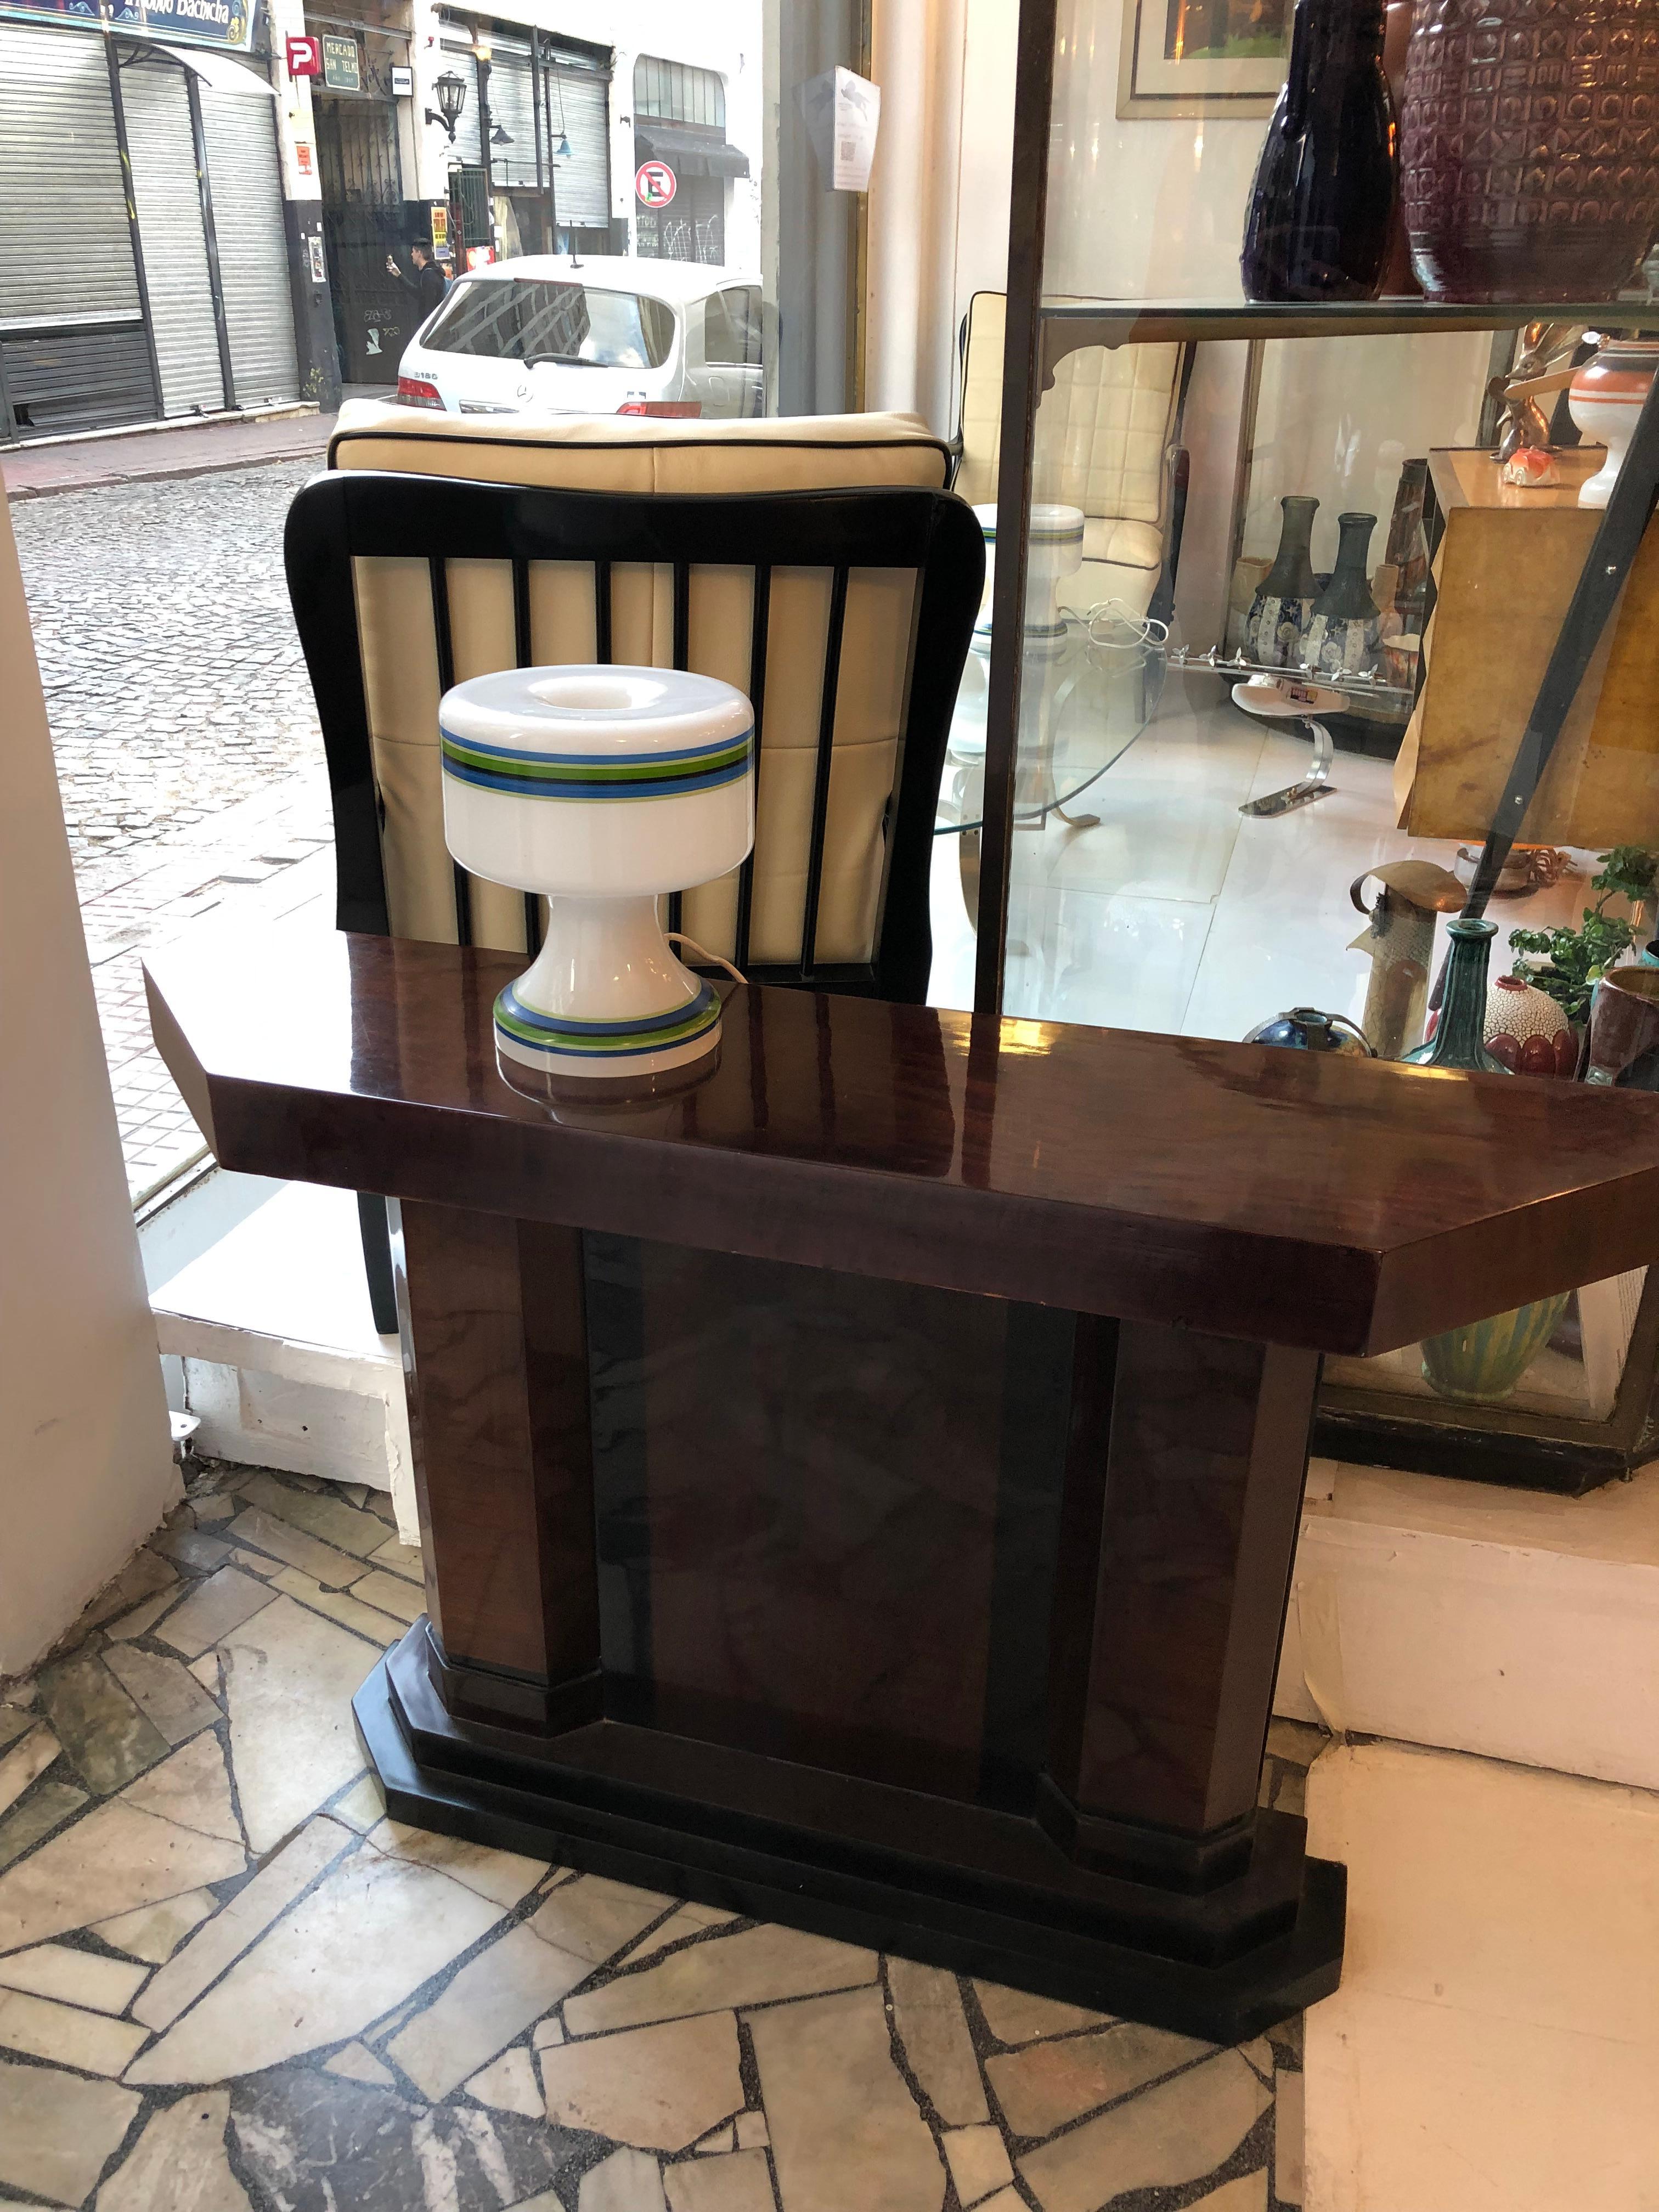 2 lampes de table italiennes

Matériau : verre 
Pays : italie
Pour prendre soin de votre propriété et de la vie de nos clients, le nouveau câblage a été effectué.
Si vous voulez vivre dans les années d'or, c'est l'éclairage dont votre projet a